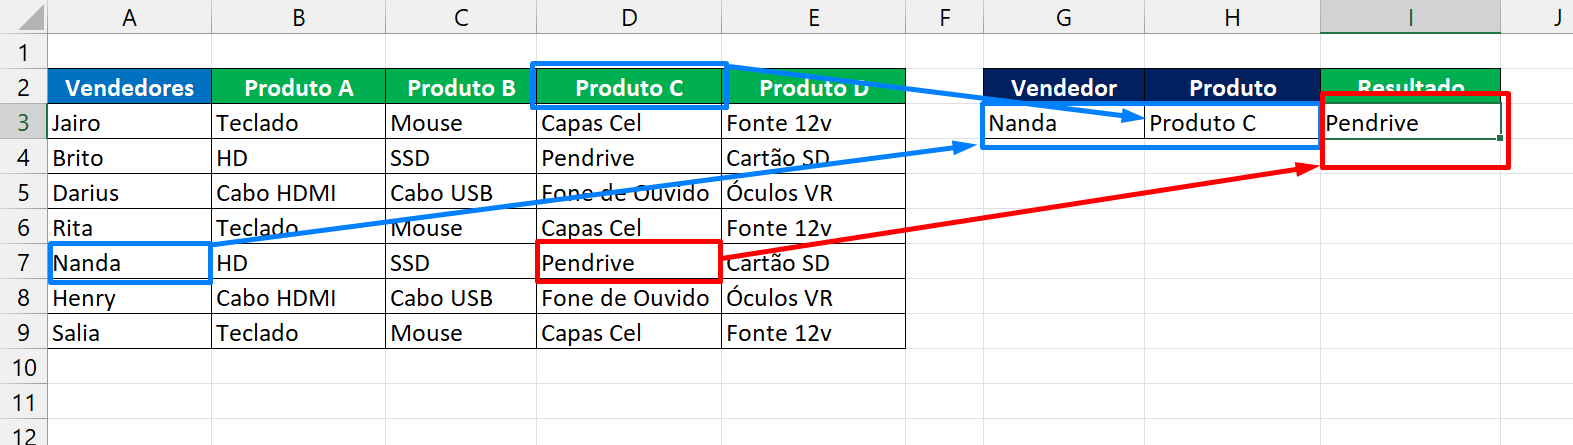 ÍNDICE e CORRESP no Excel, exemplo resultado linhas e colunas